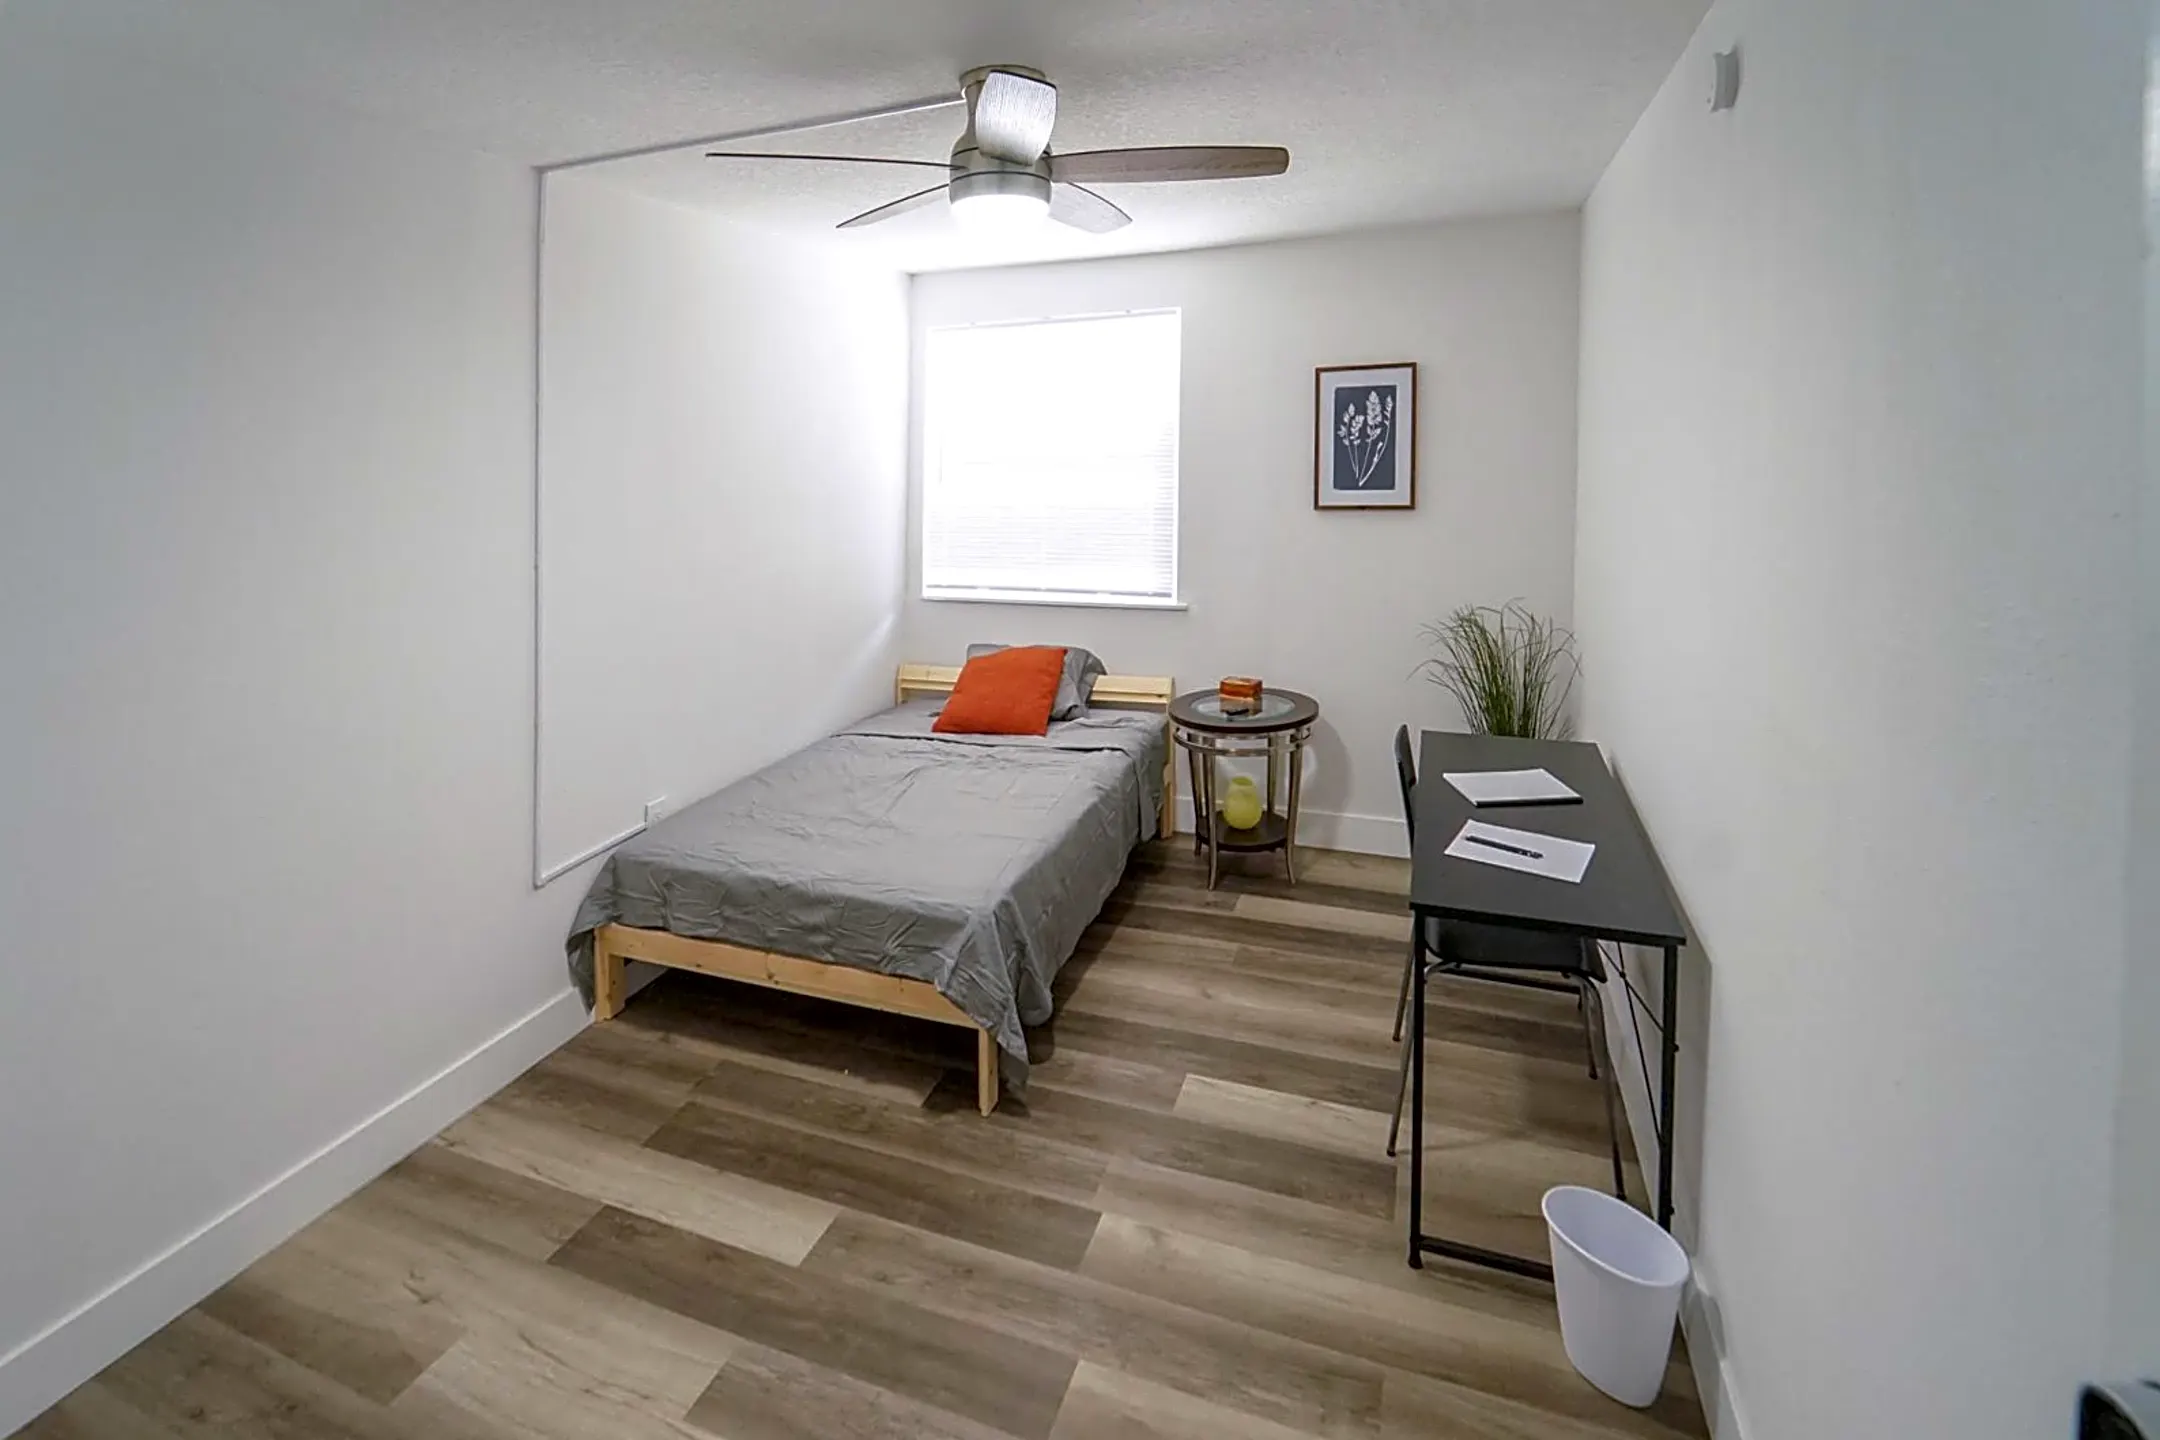 Bedroom - Room For Rent - Orlando, FL